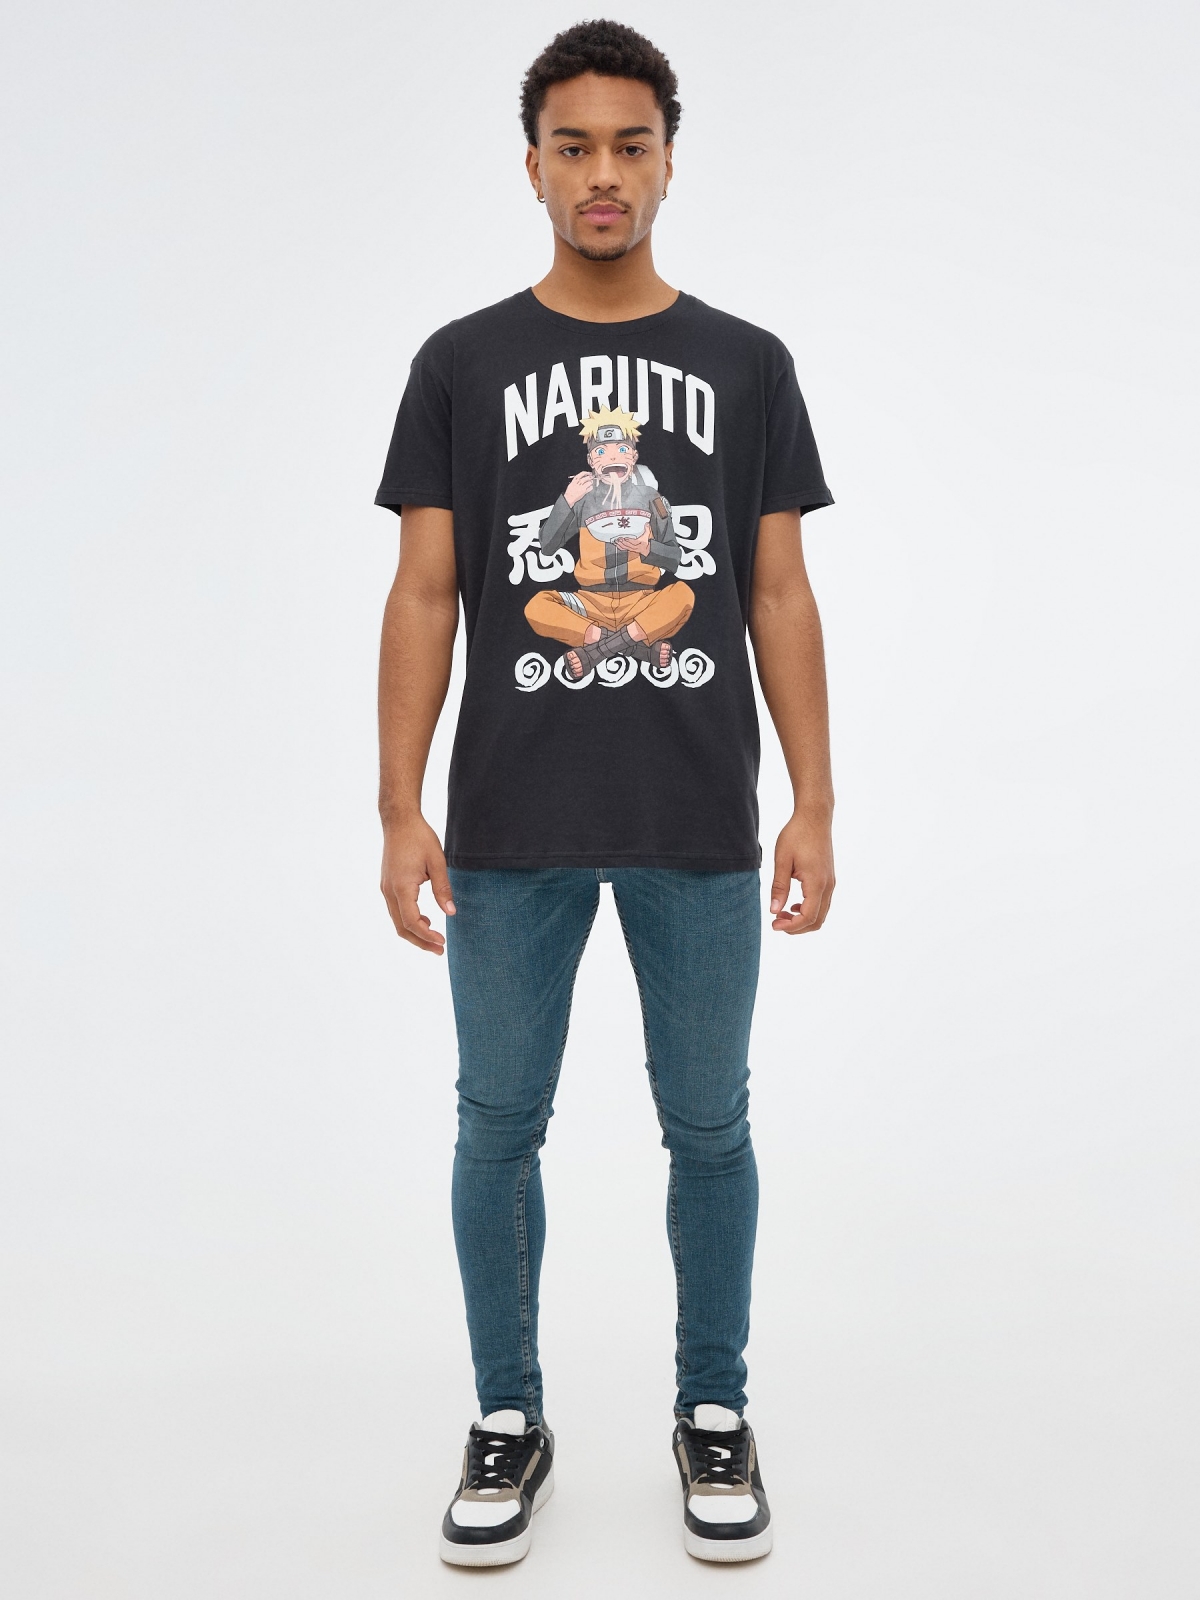 T-shirt preta Naruto preto vista geral frontal